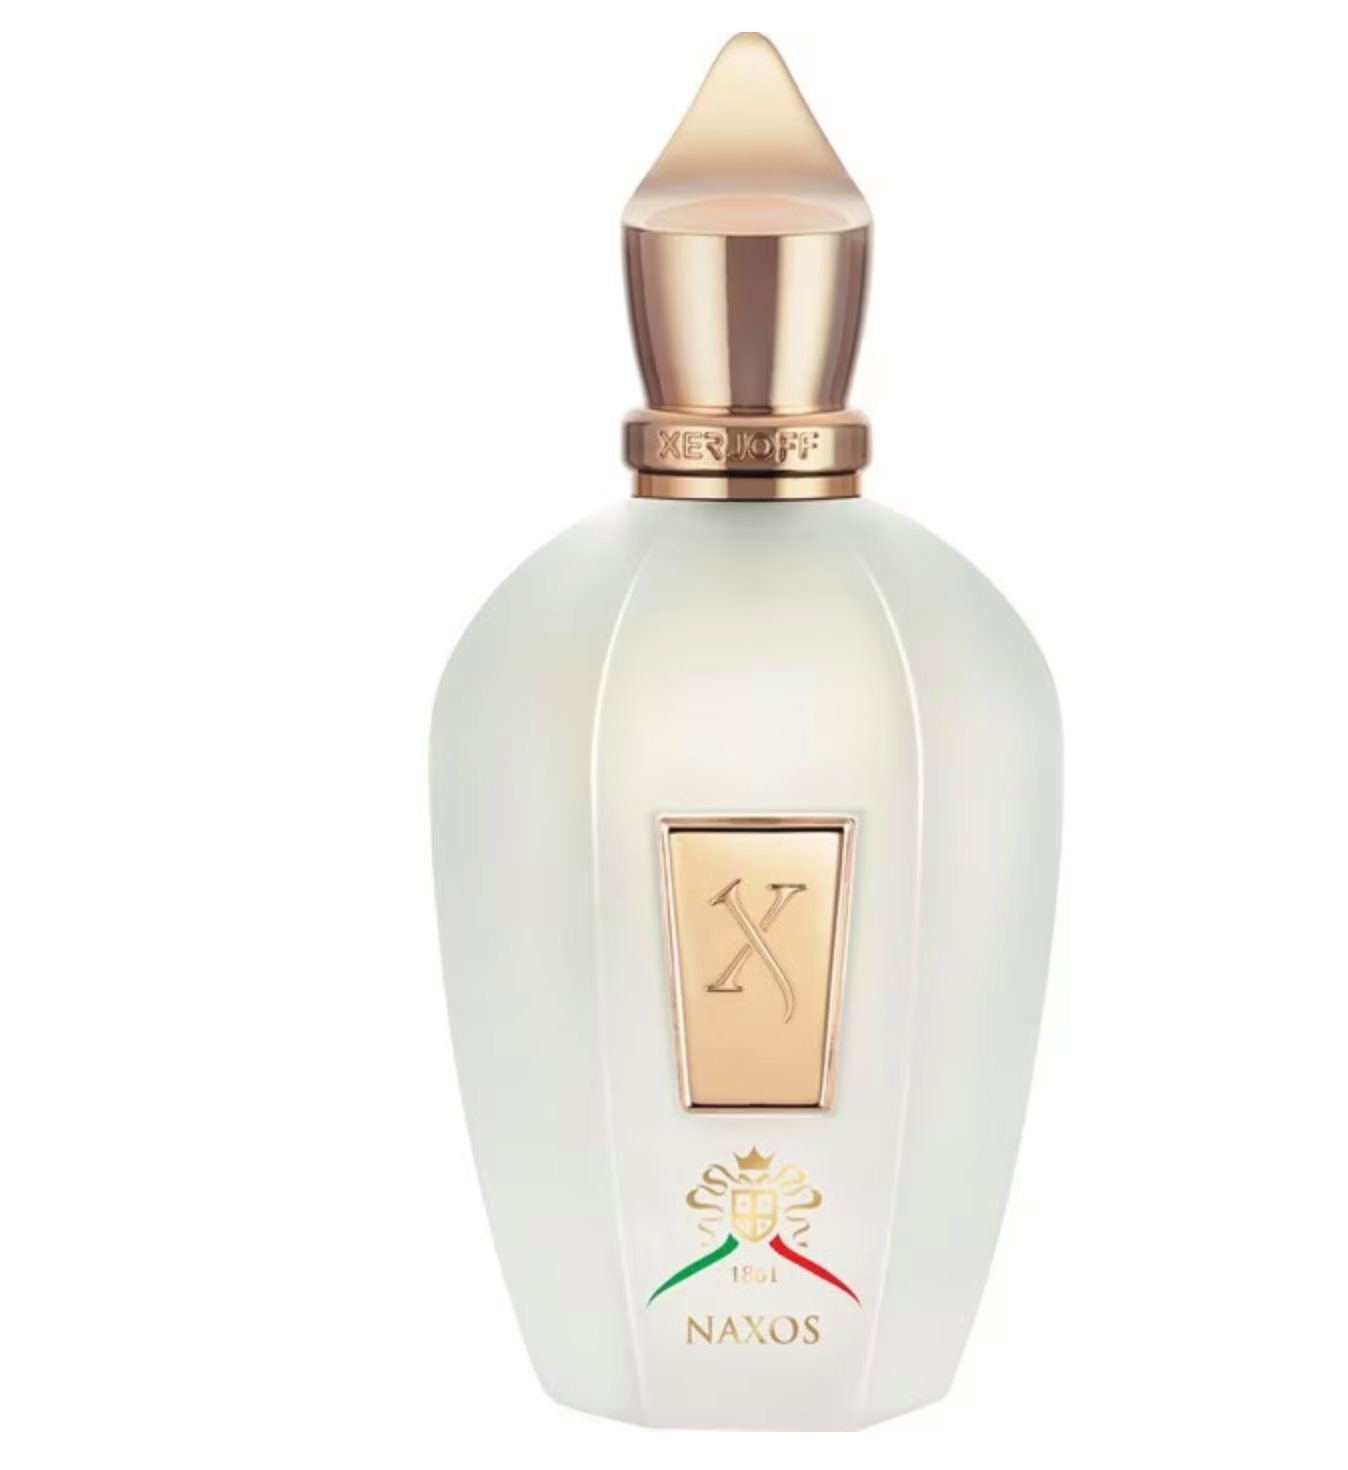 Parfum Box XERJOFF Eau Gift Parfum Spray 100ml XERJOFF de von Naxos Eau de